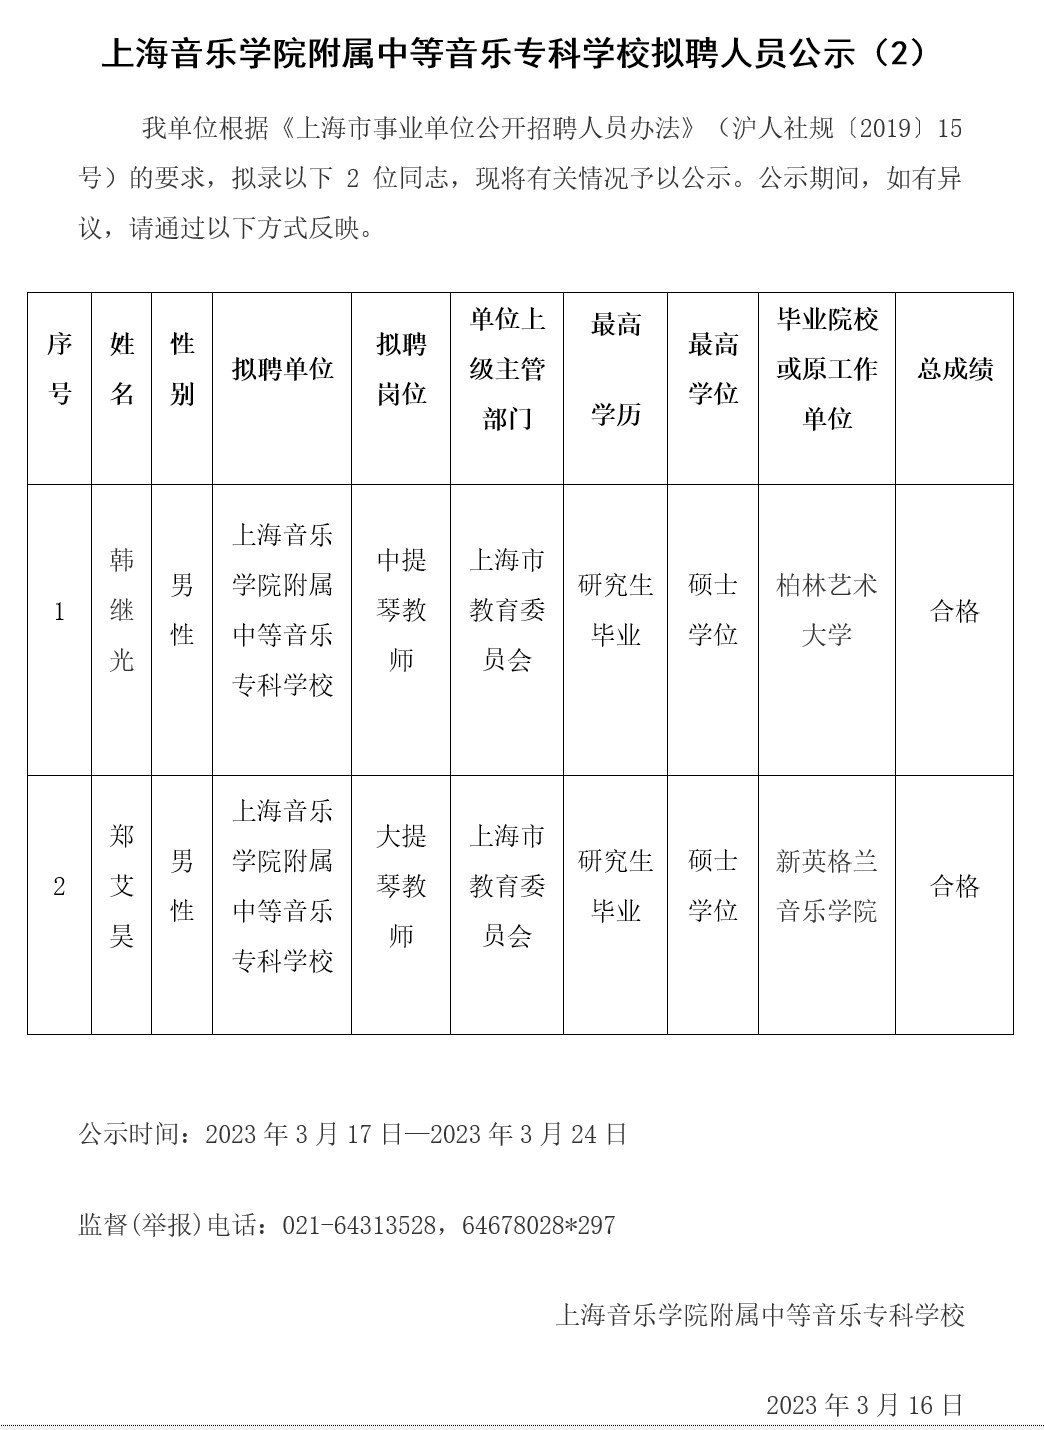 上海音乐学院附属中等音乐专科学校拟聘人员公示（2） 